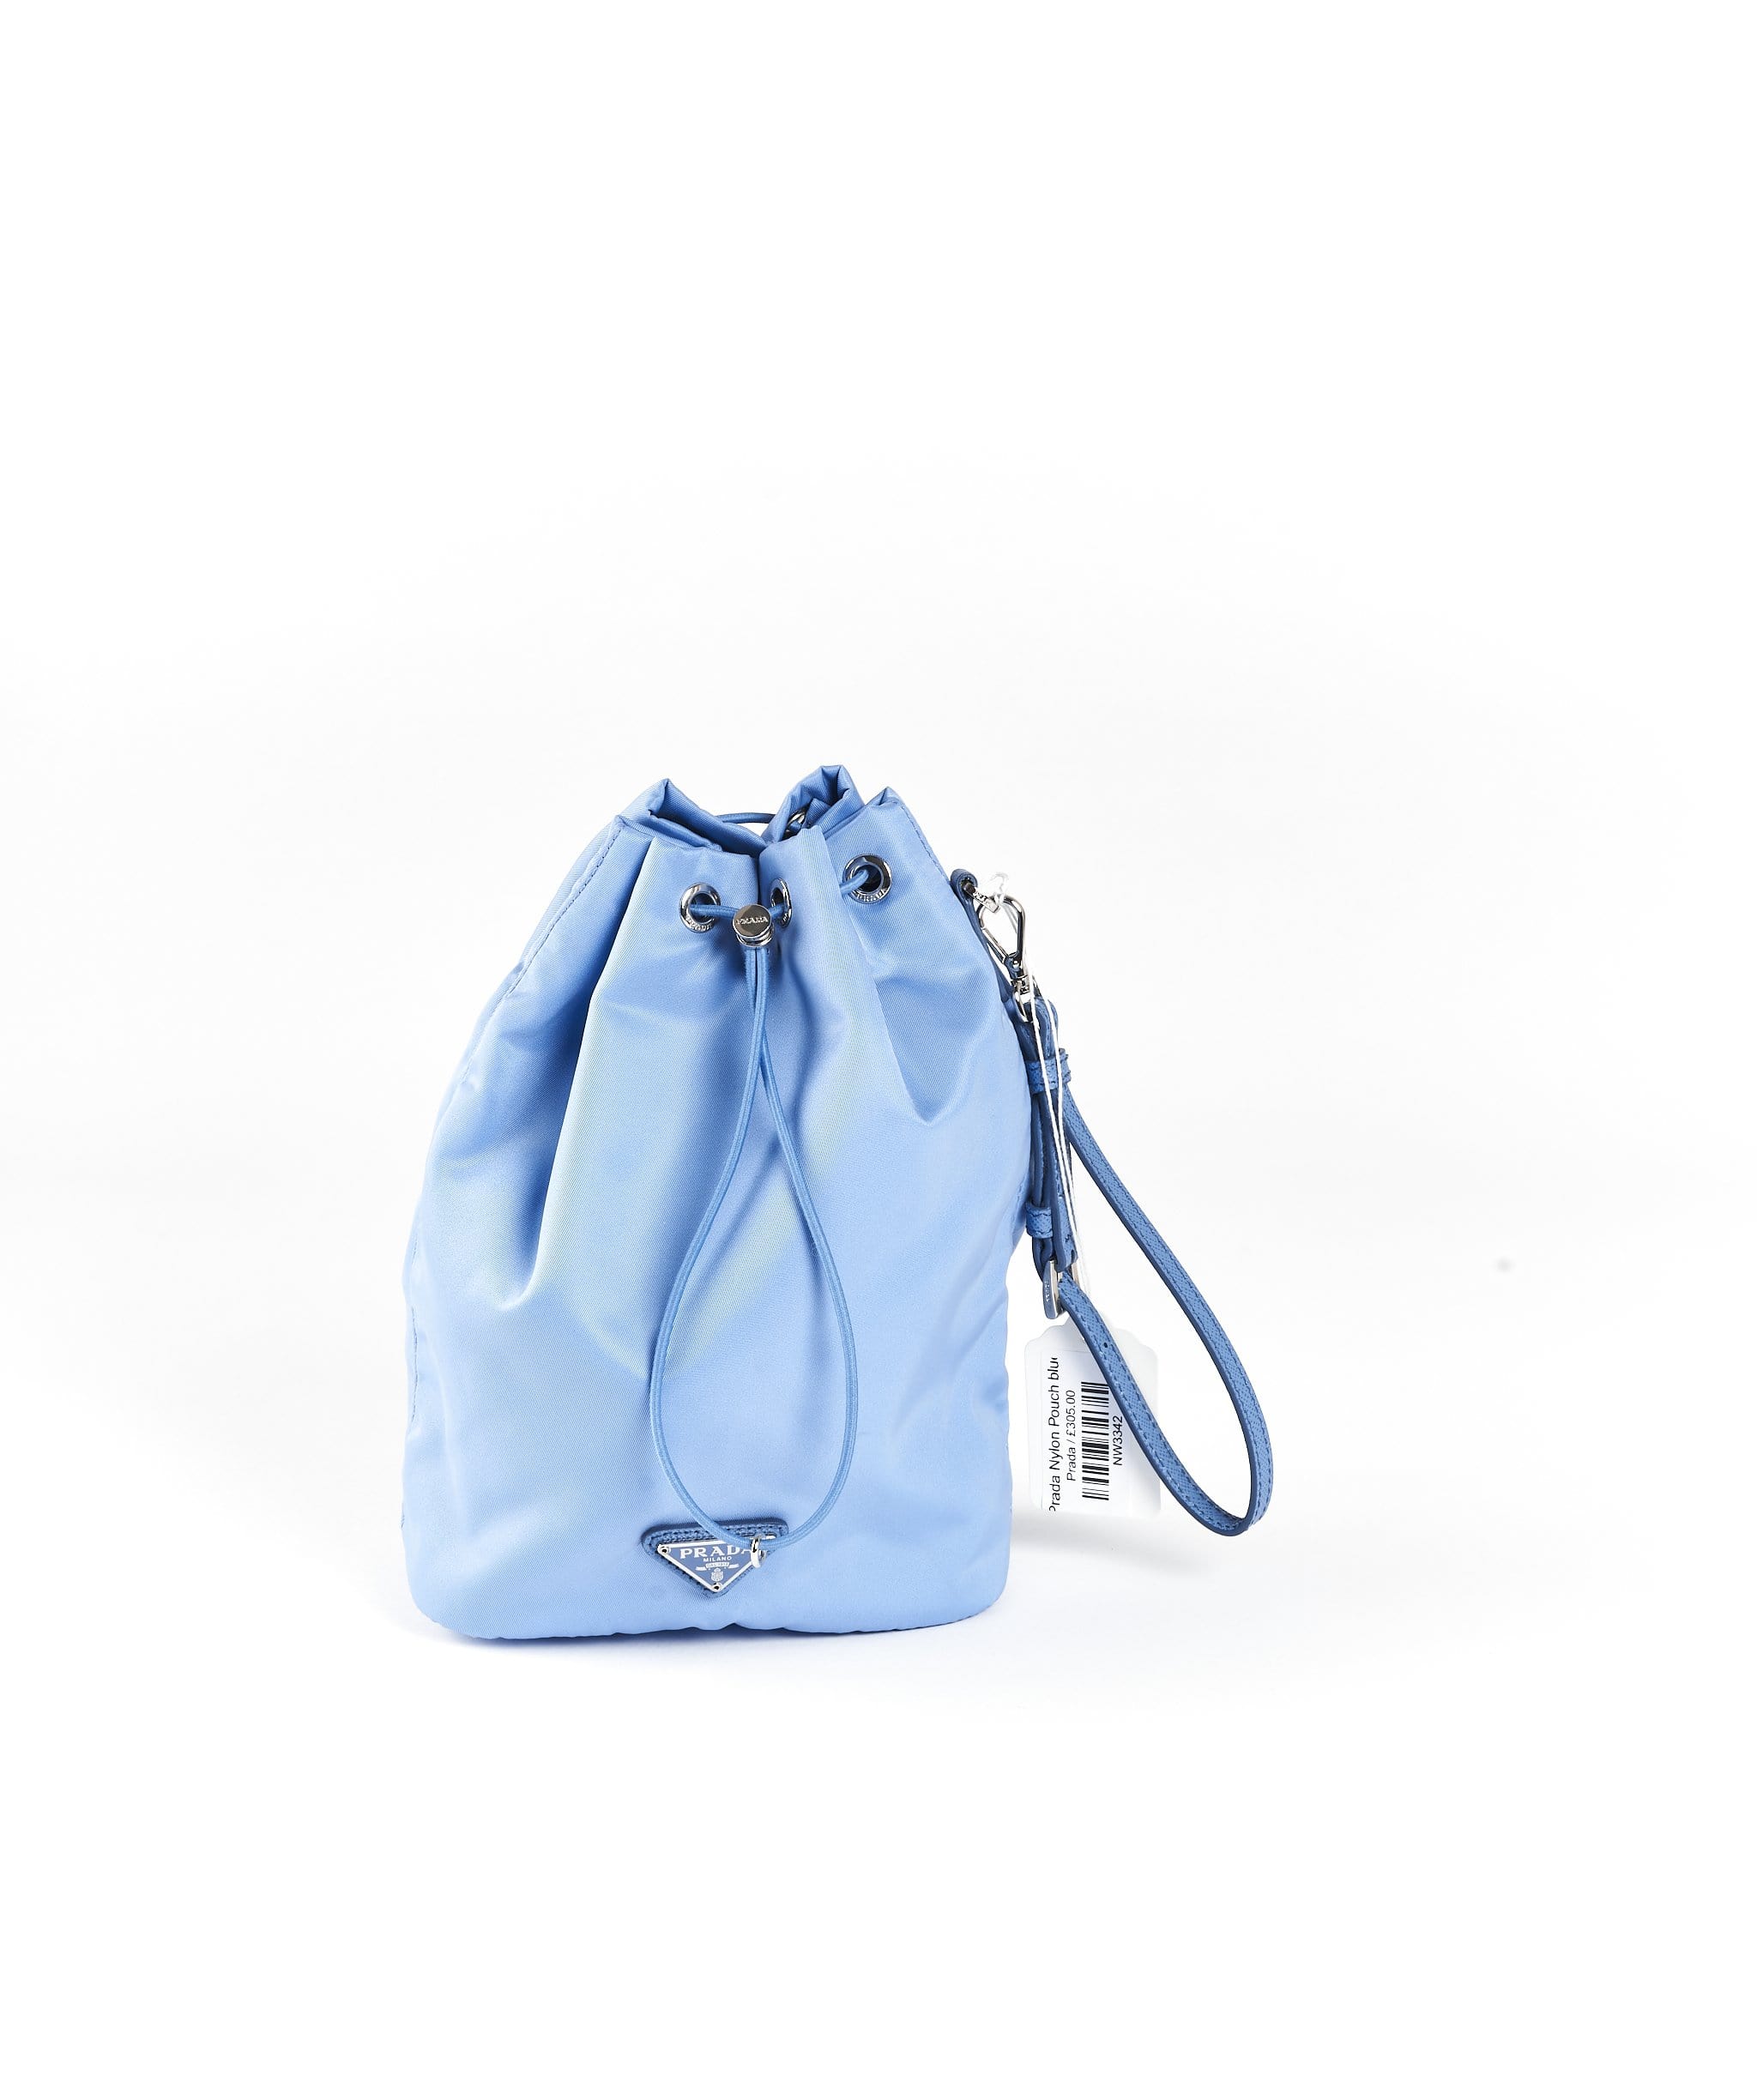 Prada, Bags, Prada Shoulder Bag Nylon Light Blue Auth 3755